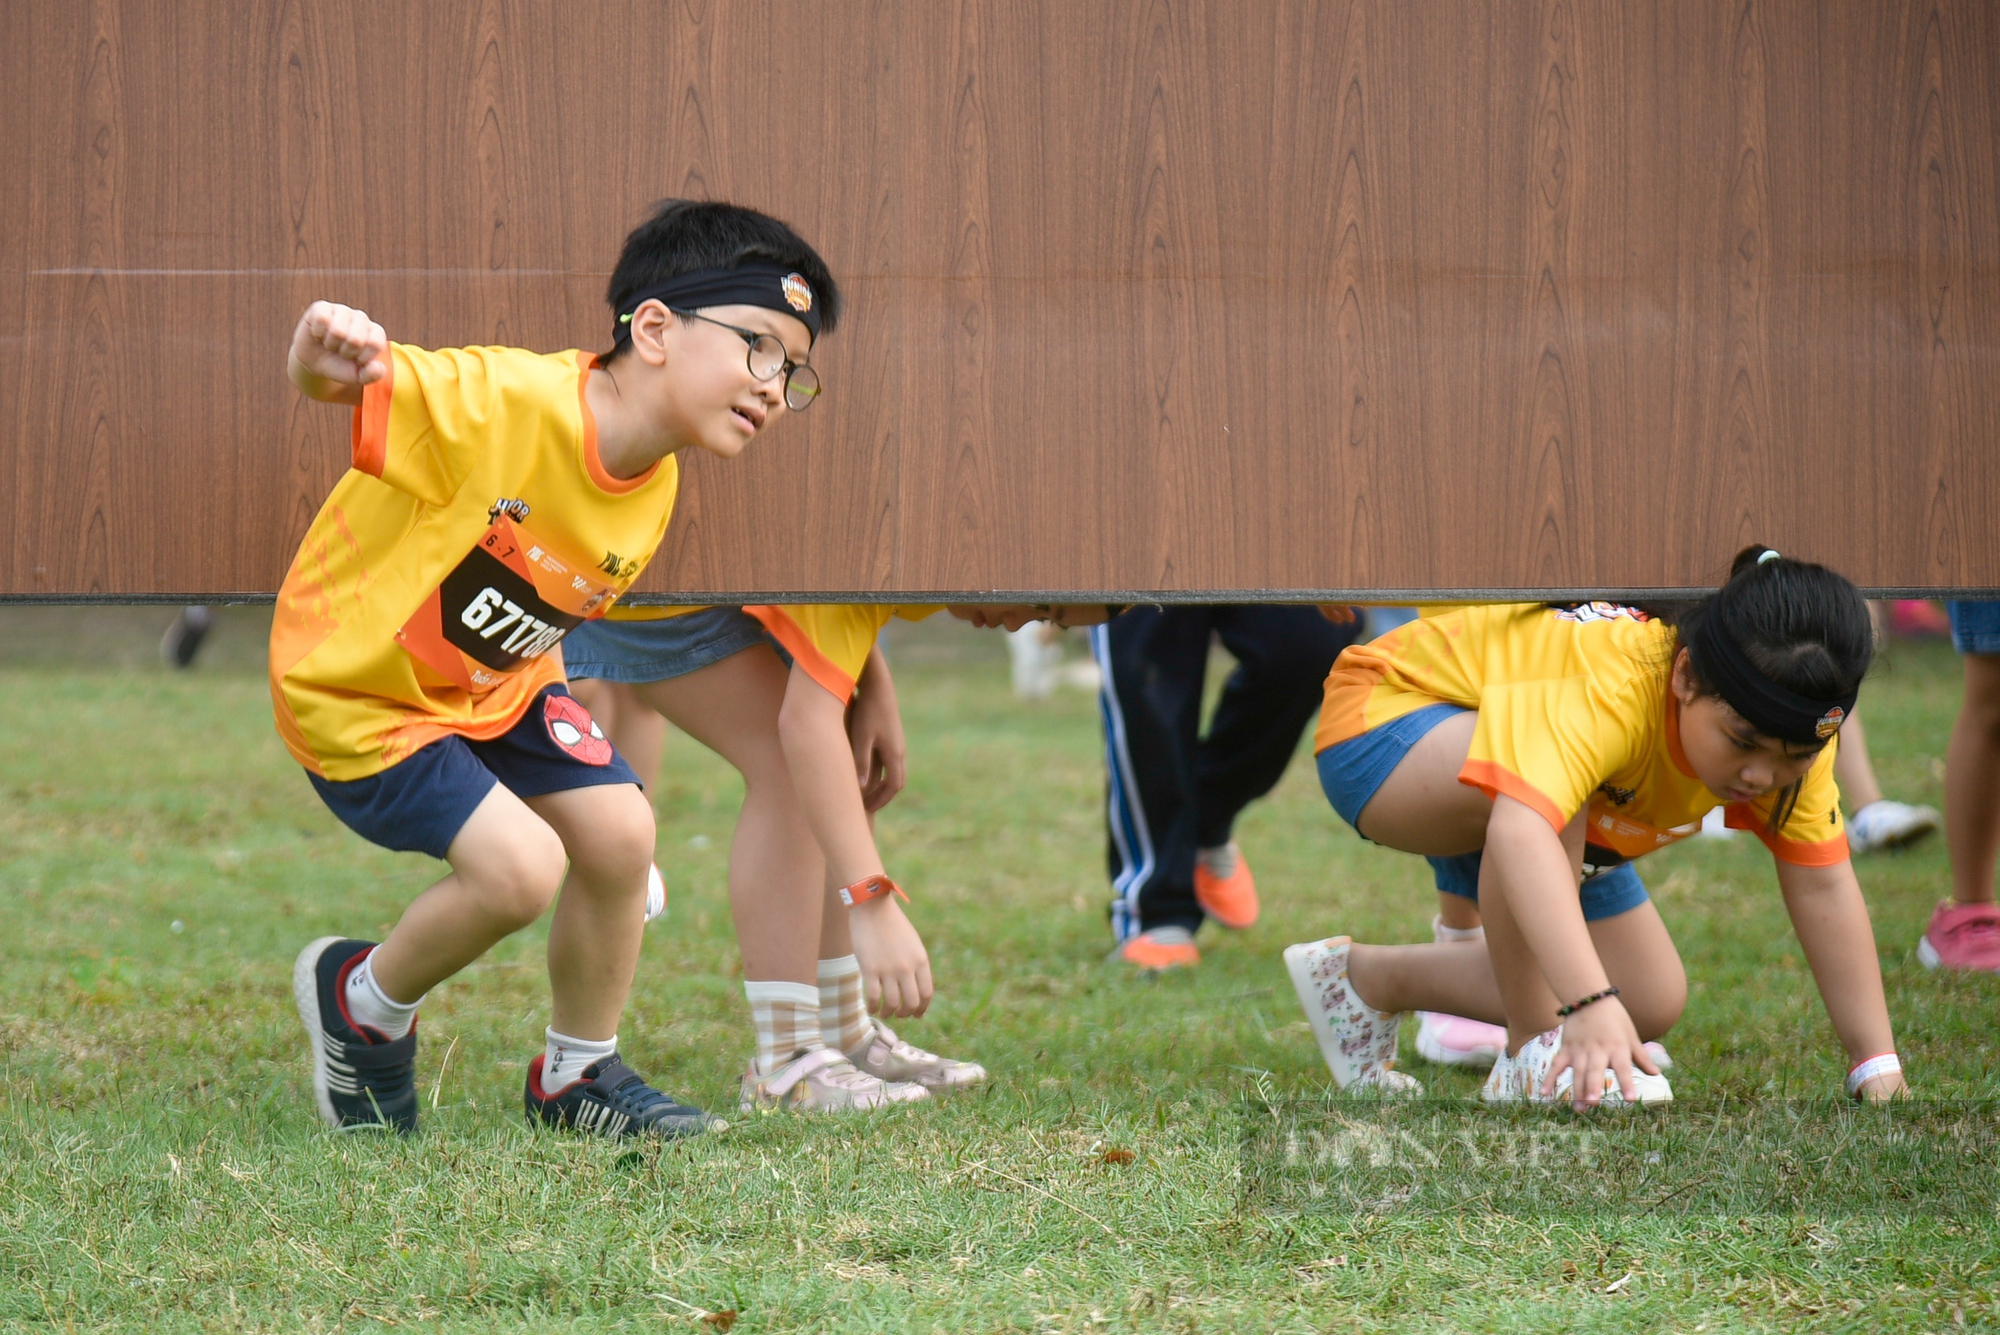 Hơn 1.500 runner nhí tham gia giải đấu vượt chướng ngại vật được tổ chức tại Hà Nội - Ảnh 4.